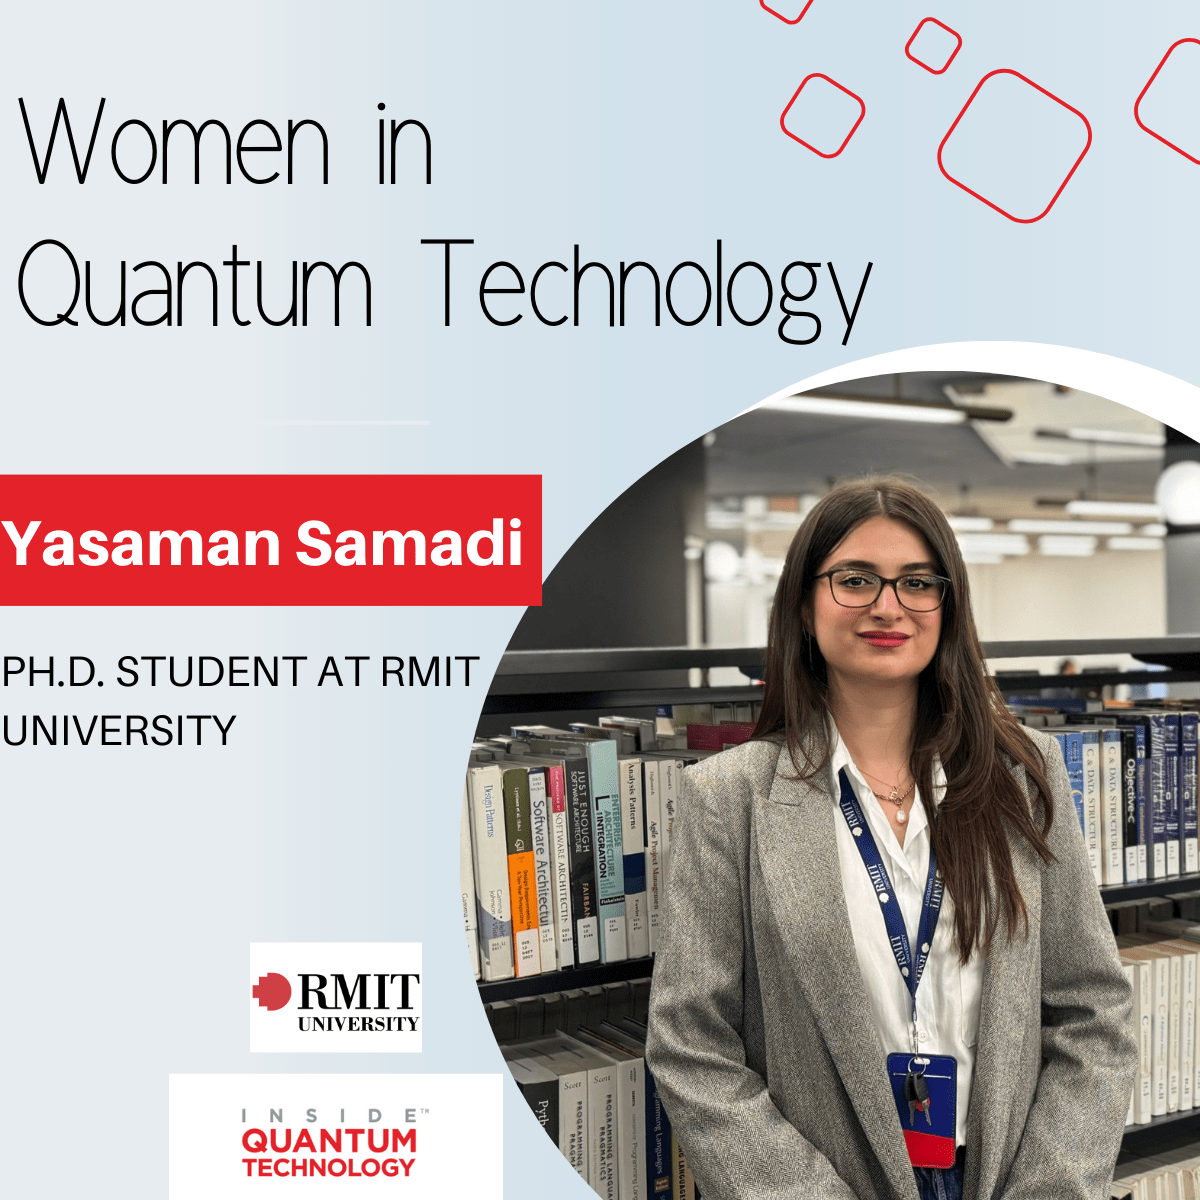 Yasaman Samadi, een Ph.D. student aan de RMIT University, deelt haar passie voor quantum computing en cybersecurity.